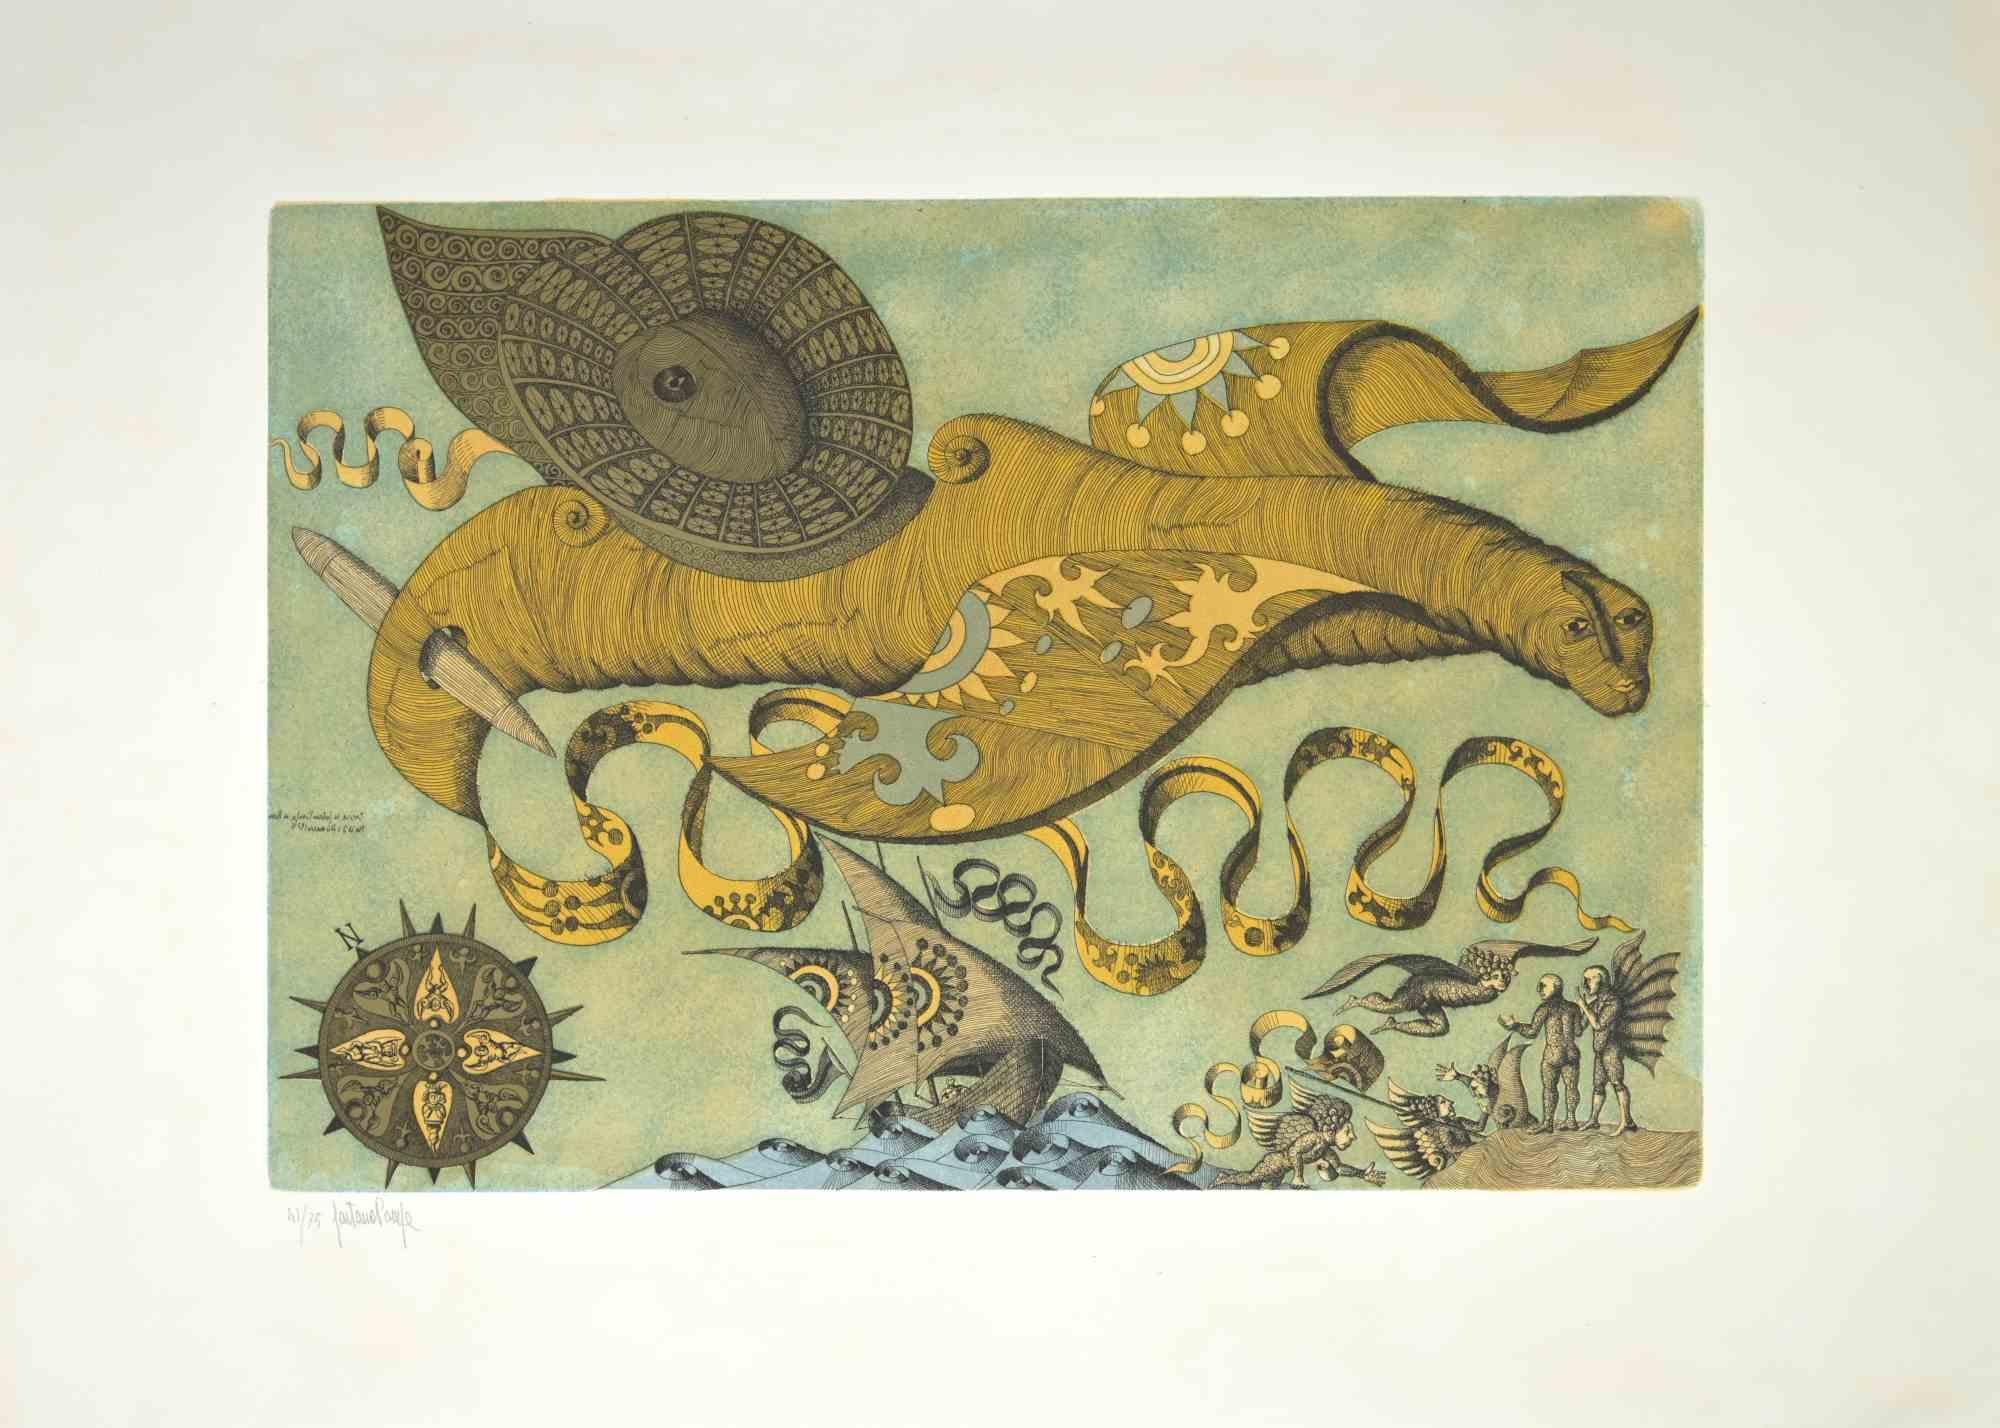 Das imaginäre Tier ist ein Kunstwerk von Gaetano Pompa (1933, Forenza - 1998) aus den 1970er Jahren.

Das Kunstwerk ist eine Aquatinta und Radierung auf Papier.

Handsigniert in der linken Ecke. Auflage 75, nummeriert, 41. 

Ausgezeichneter